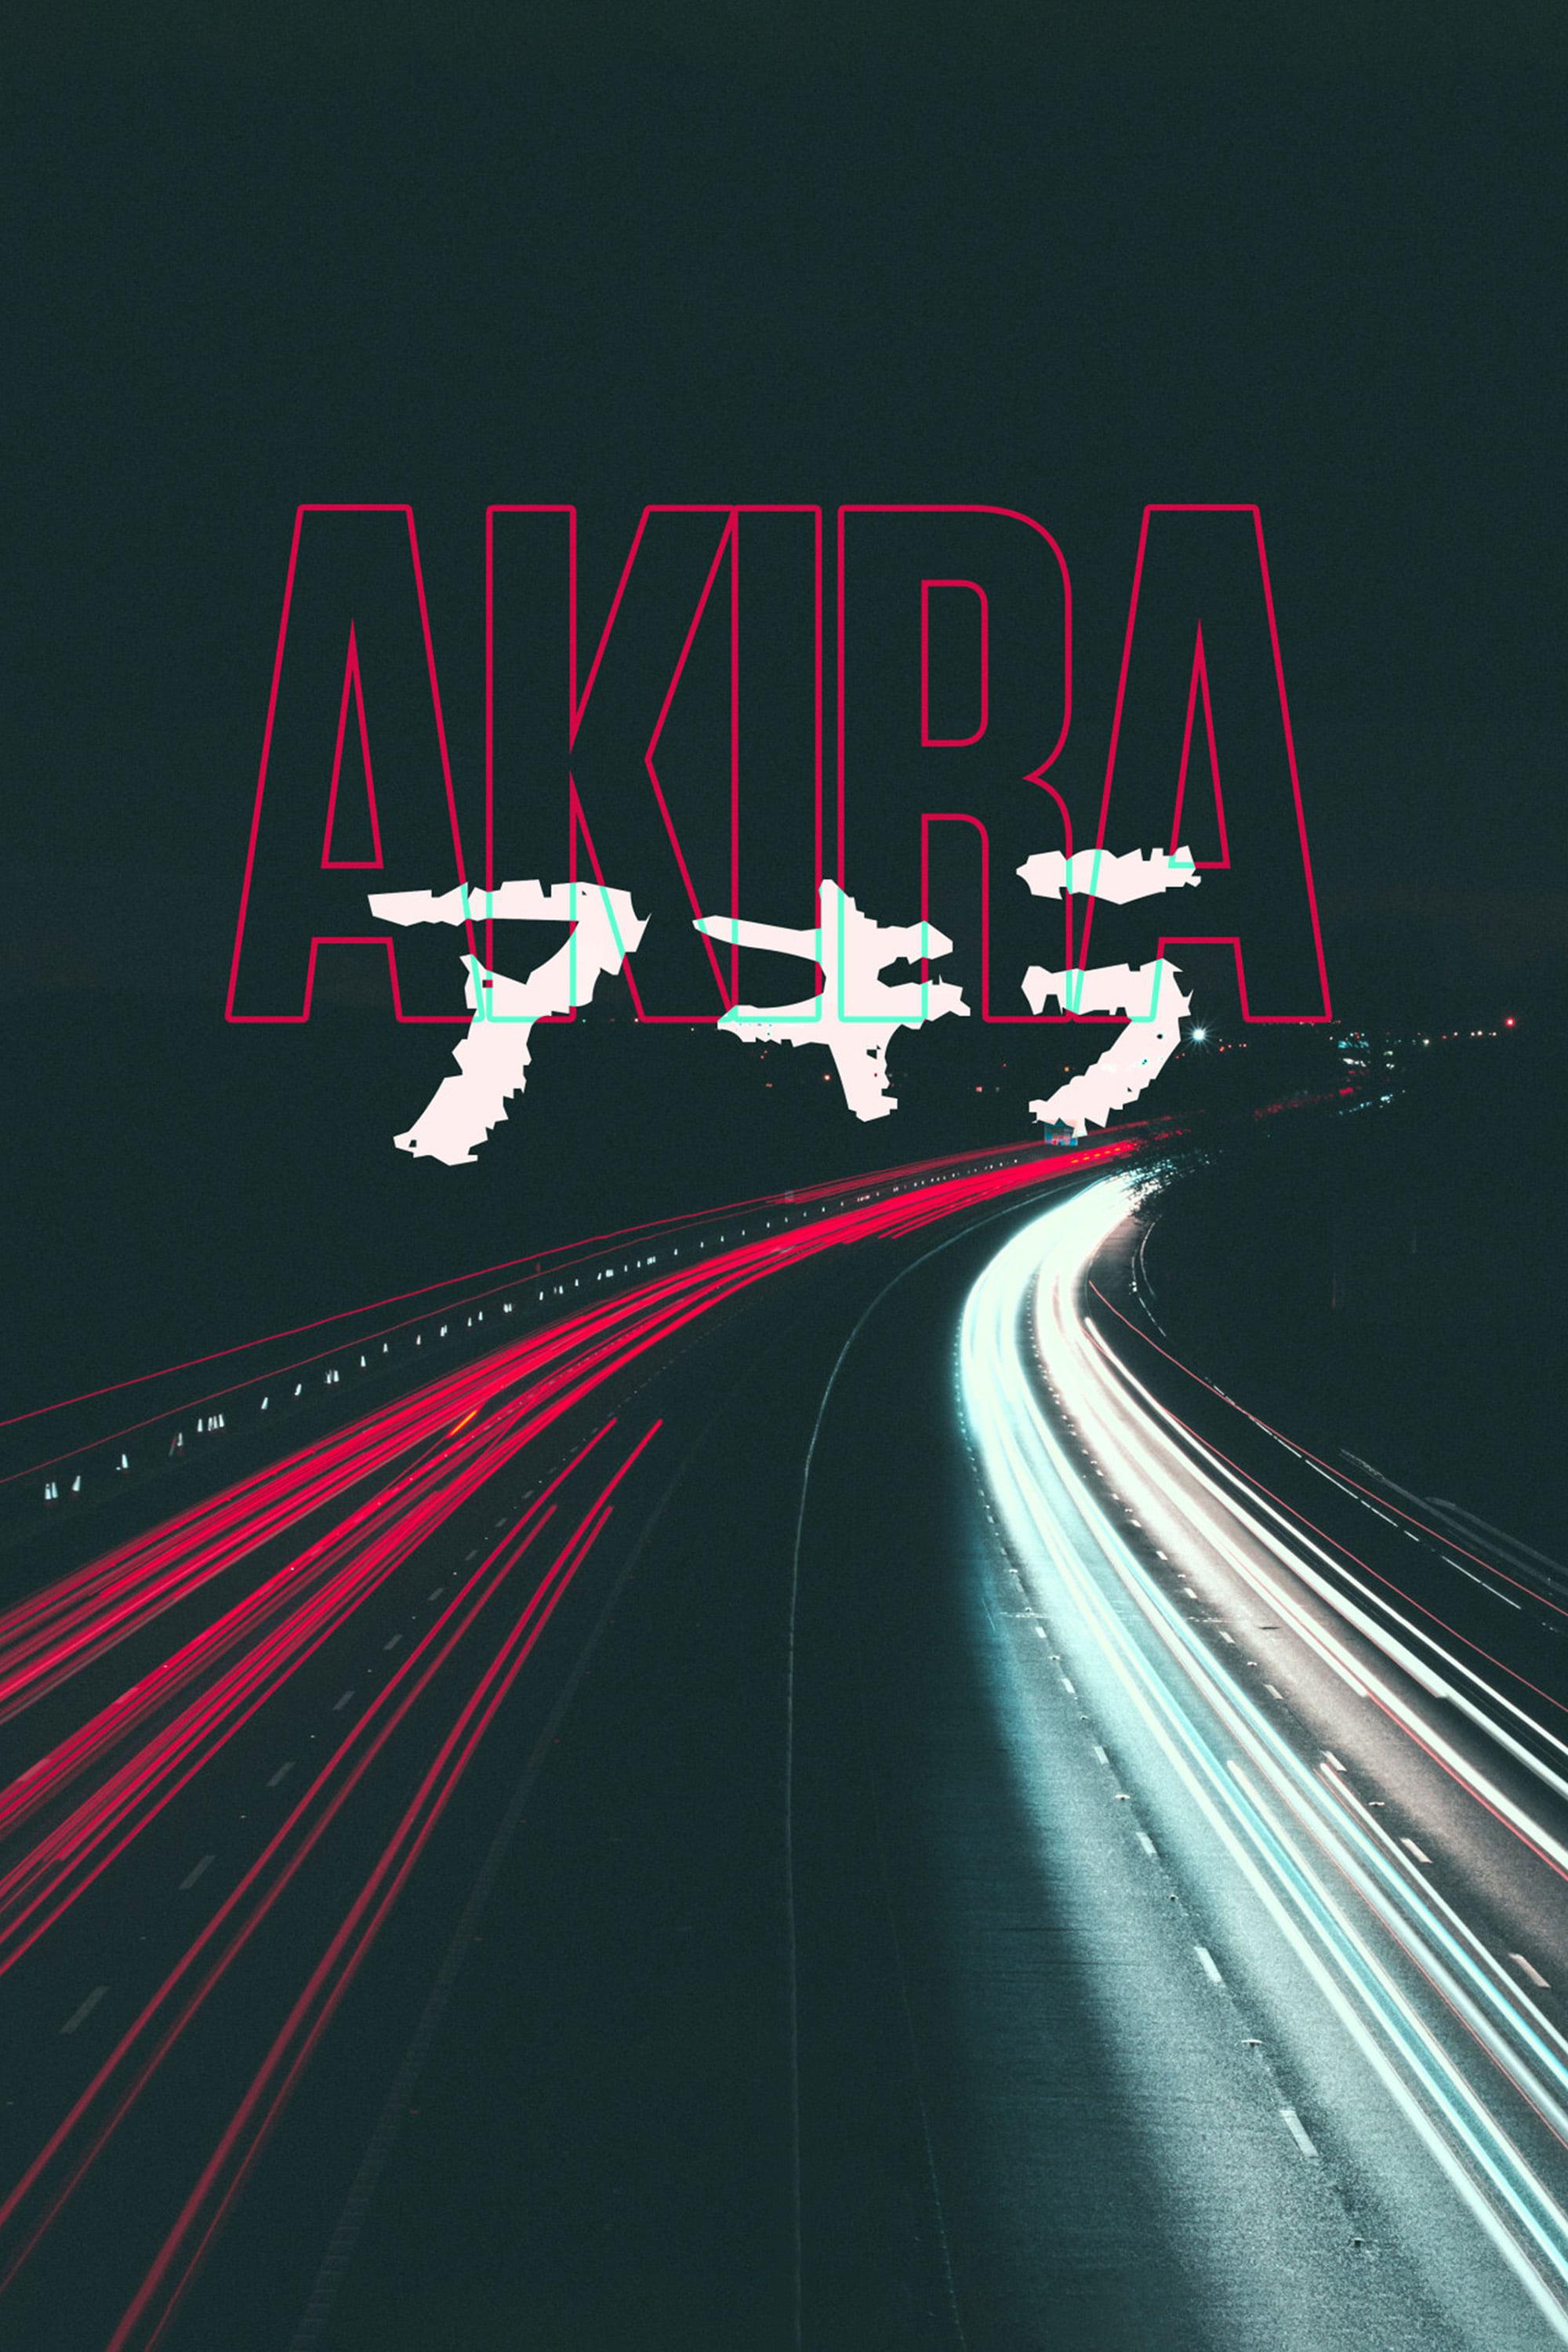 Akira and Akira poster